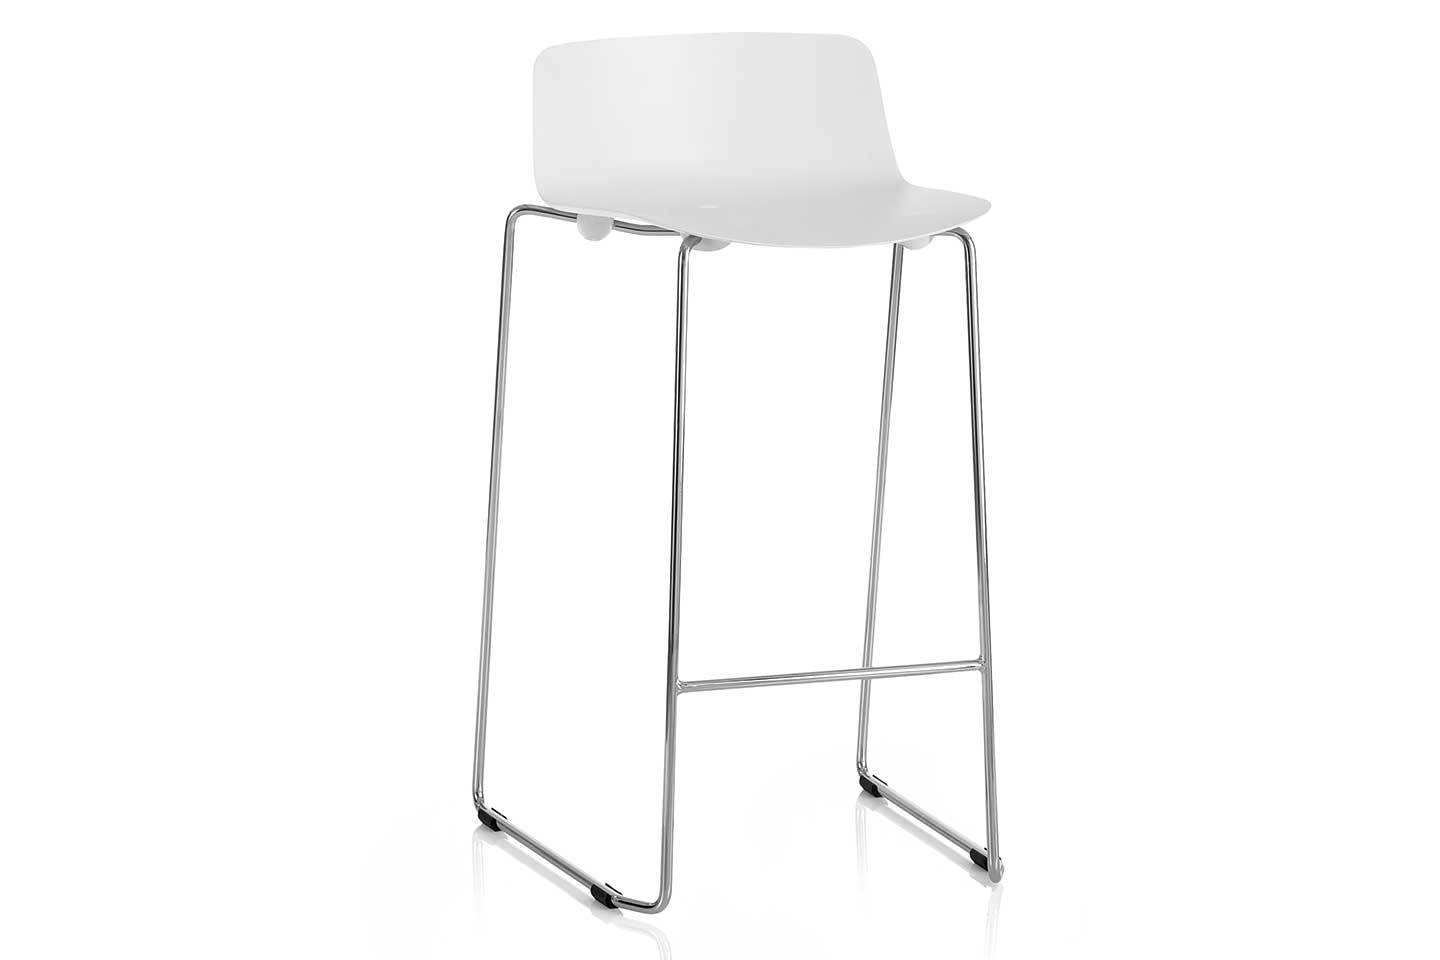 Mobili Italia_Colos VESPER 3B counter stool